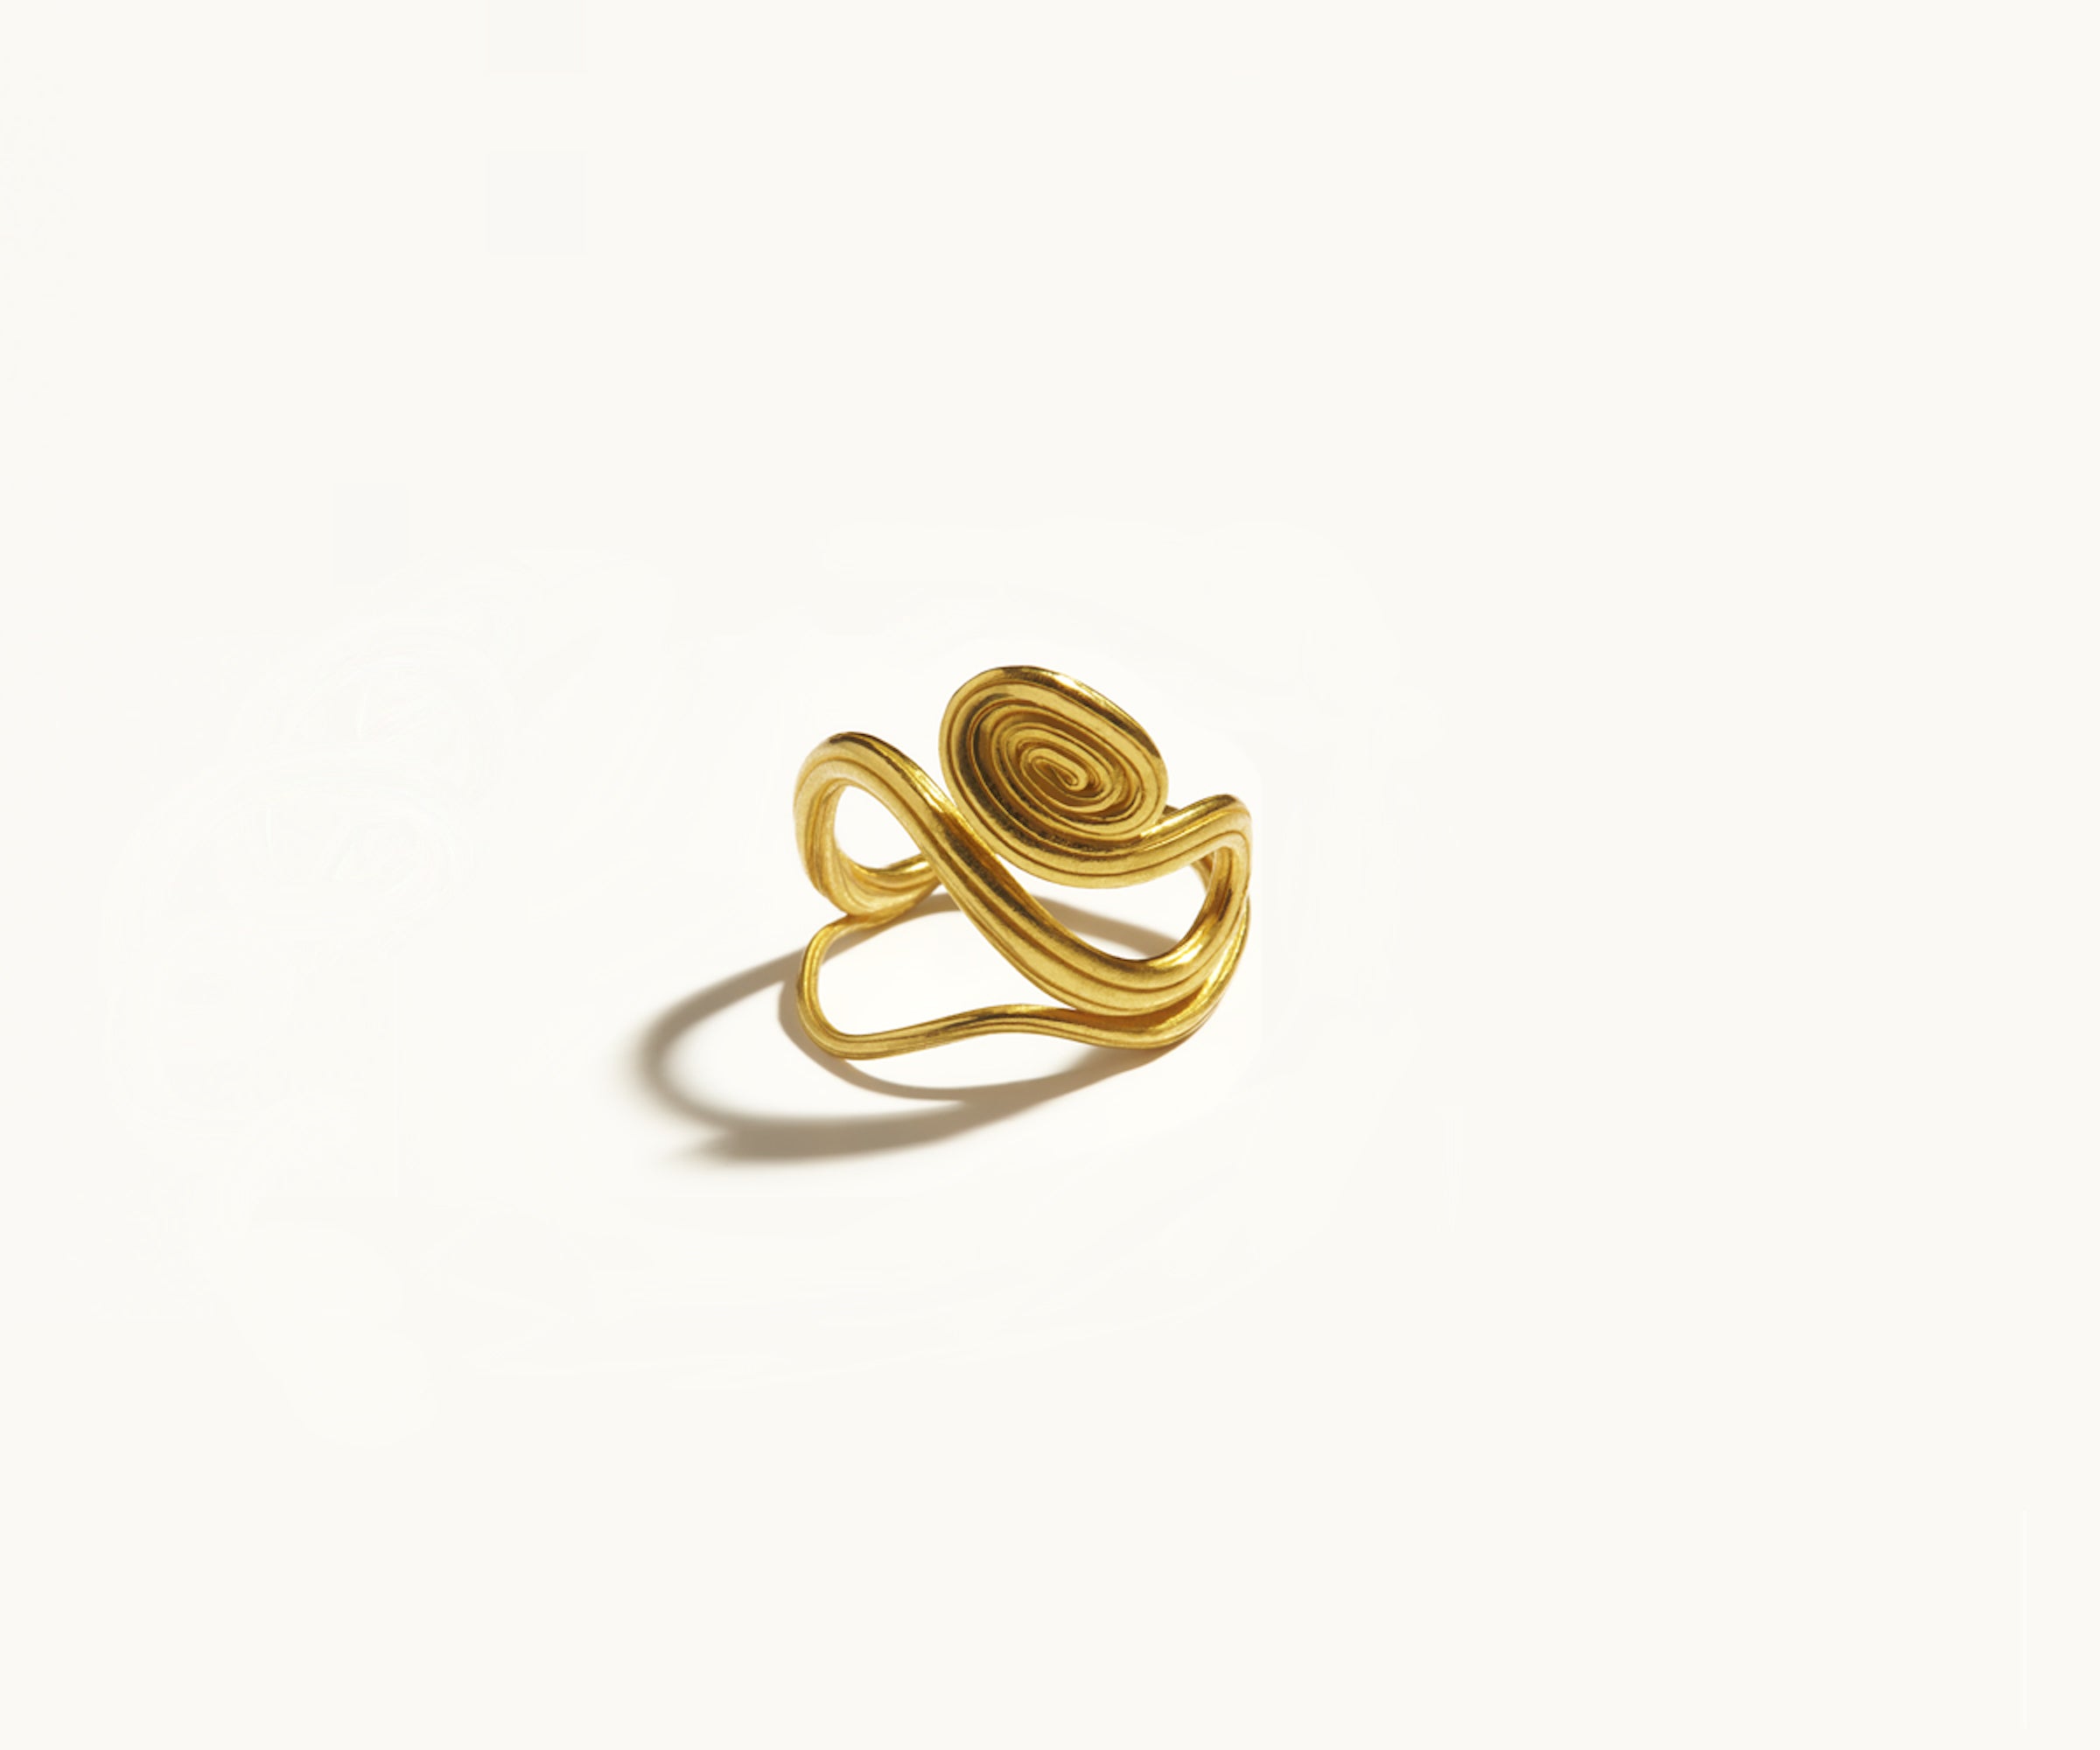 Arje Griegst Jewellery Jewelry Gold Diamonds Denmark Smykker Ring spiral